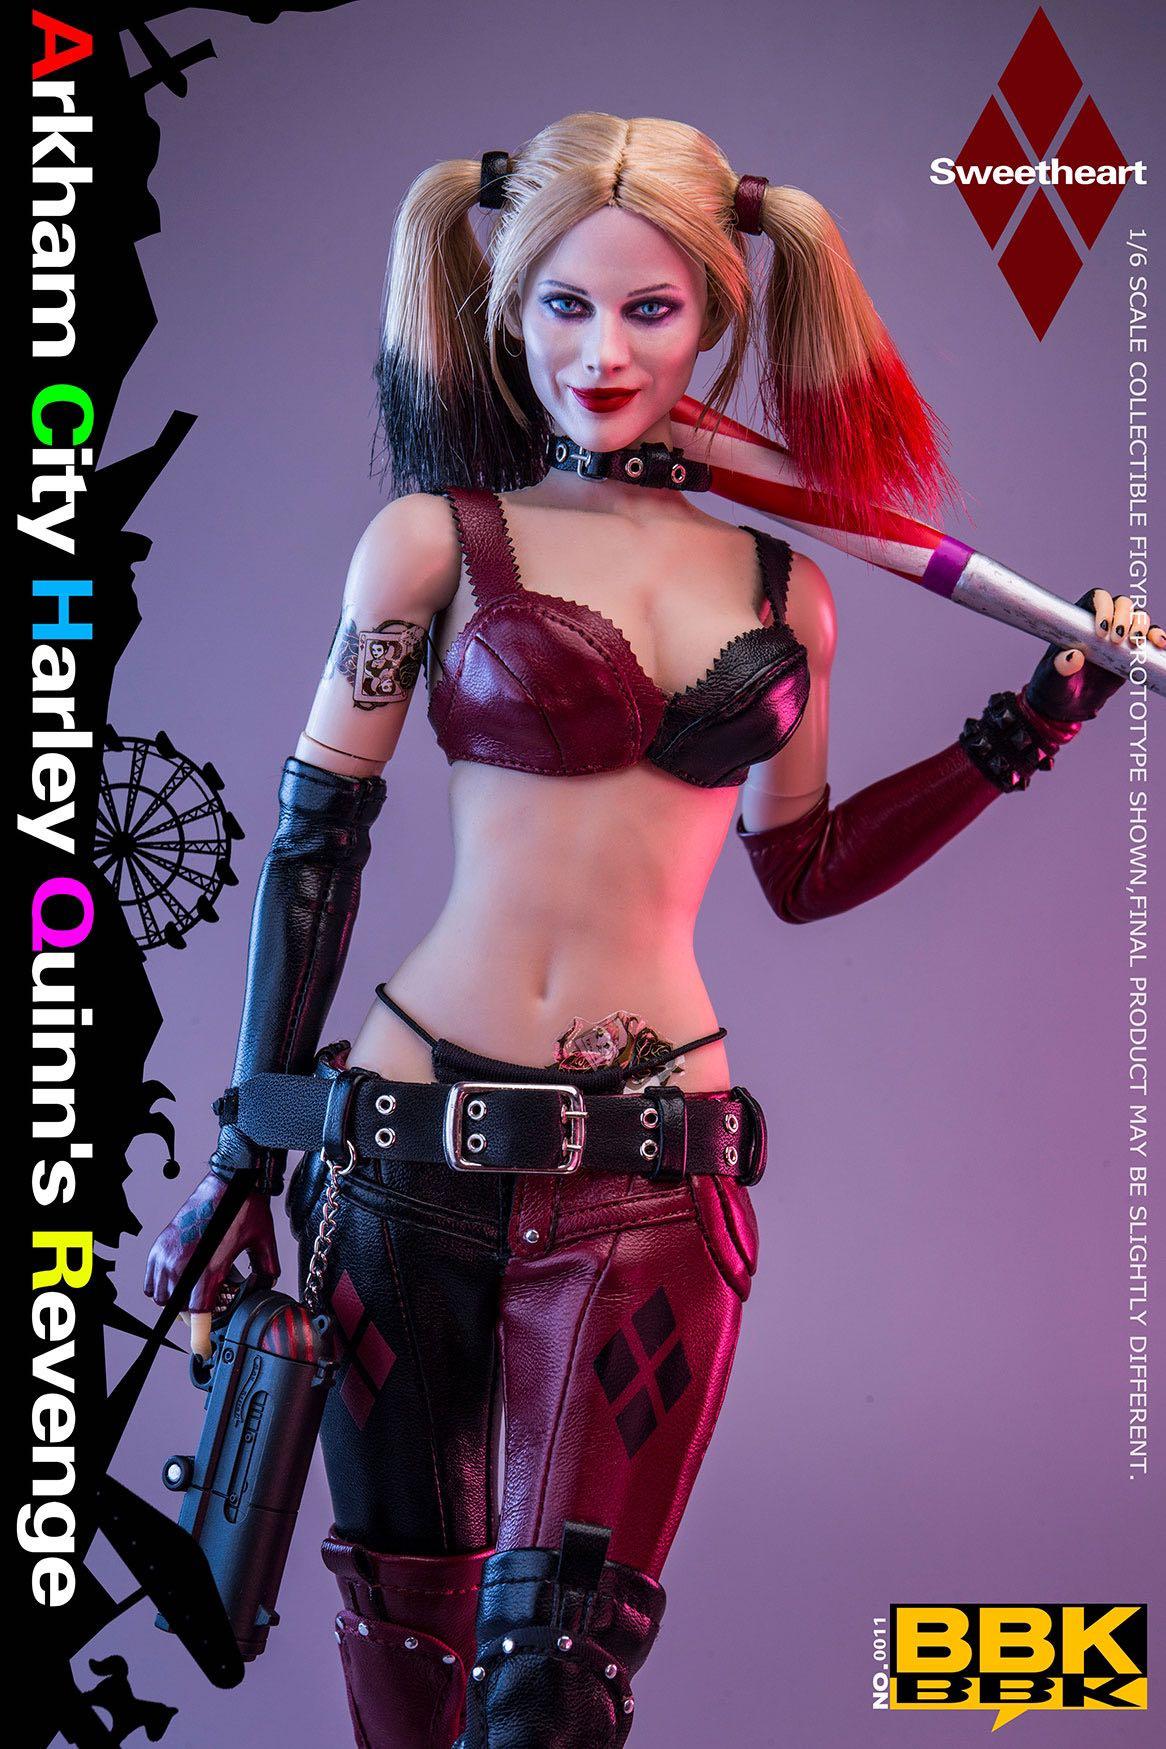 Bbk Bbk Arkham City Harley Quinn S Revenge Figure Hobbies Toys Toys Games On Carousell